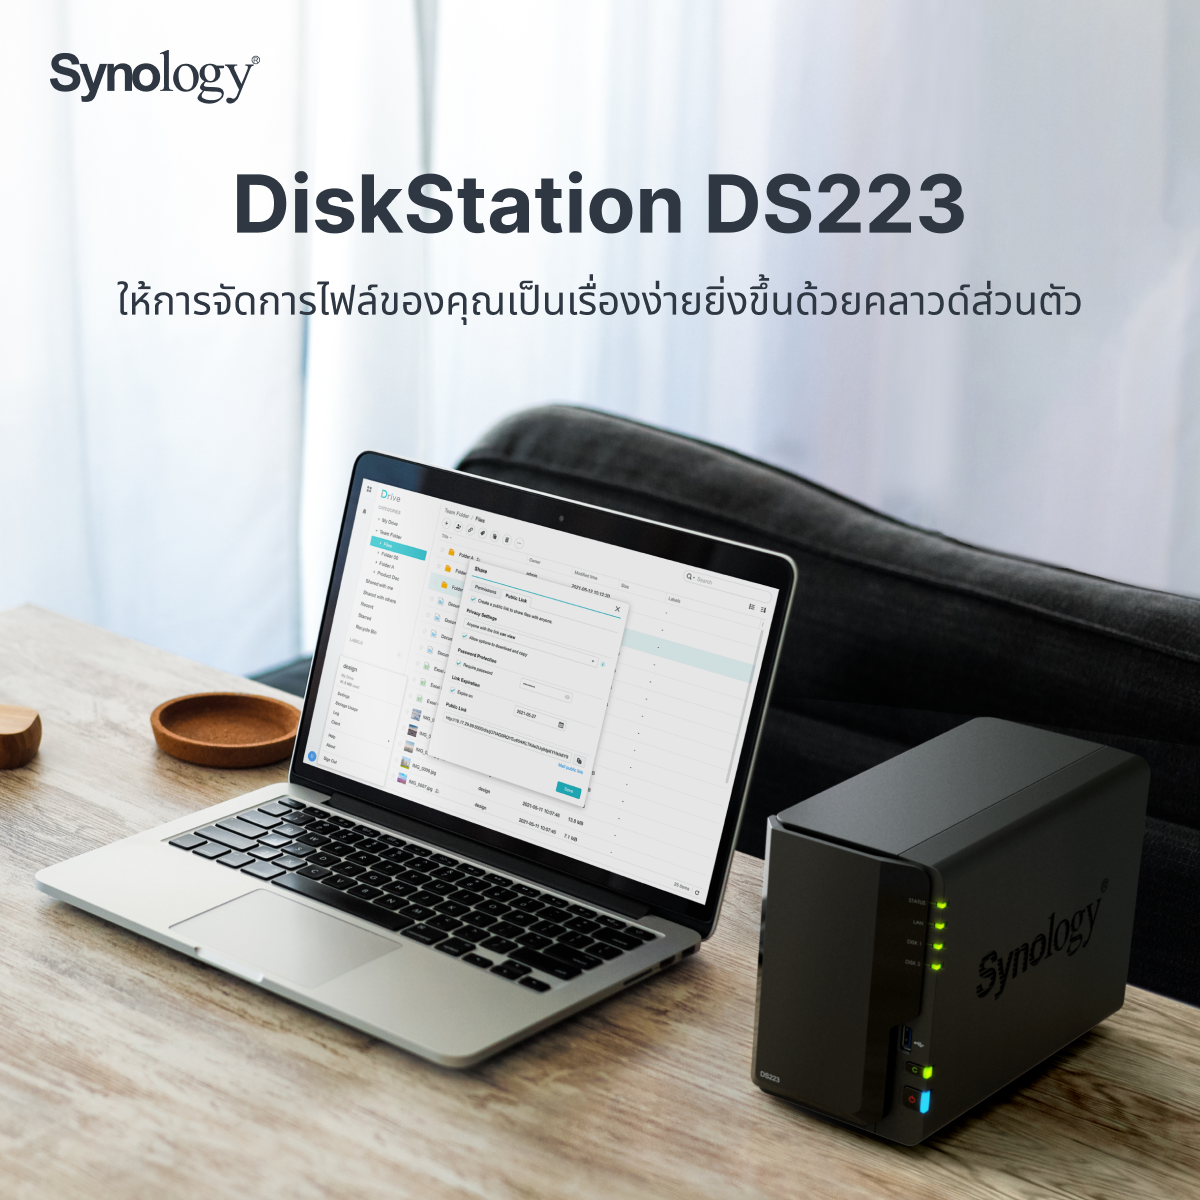 diskstation ds223 Synology ® DiskStation DS223 แพลตฟอร์มการจัดการข้อมูลสำหรับบ้านและสำนักงานขนาดเล็ก